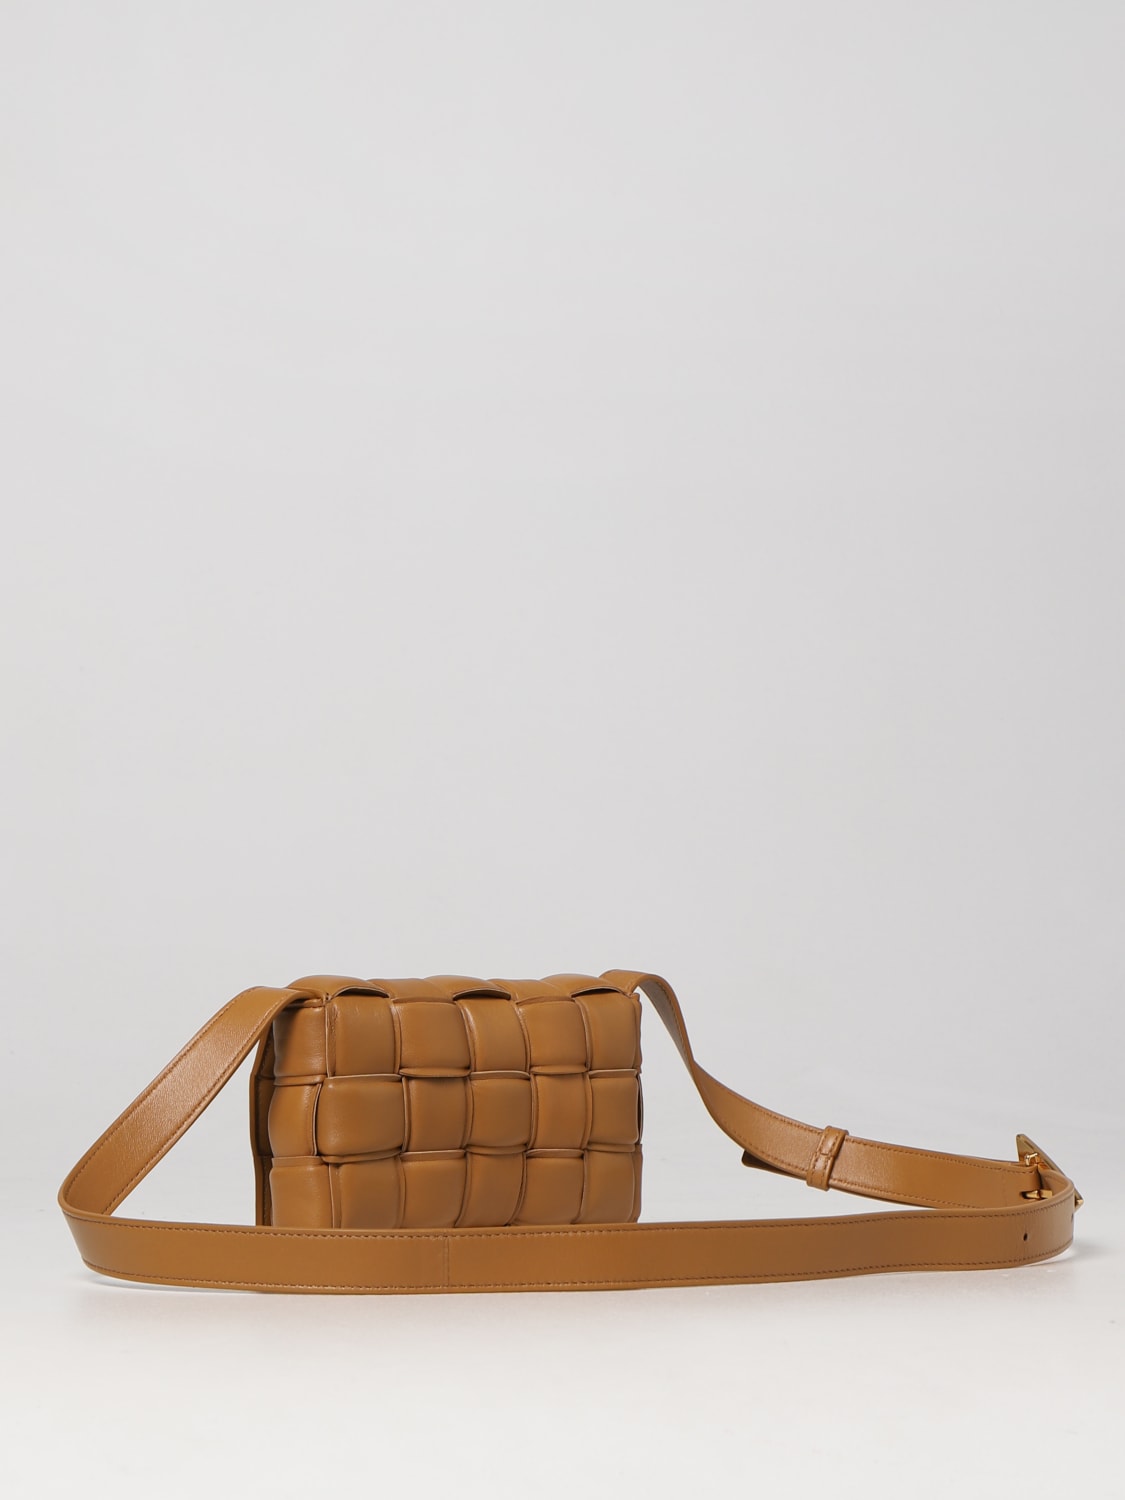 BOTTEGA VENETA: mini bag for woman - Camel | Bottega Veneta mini bag ...